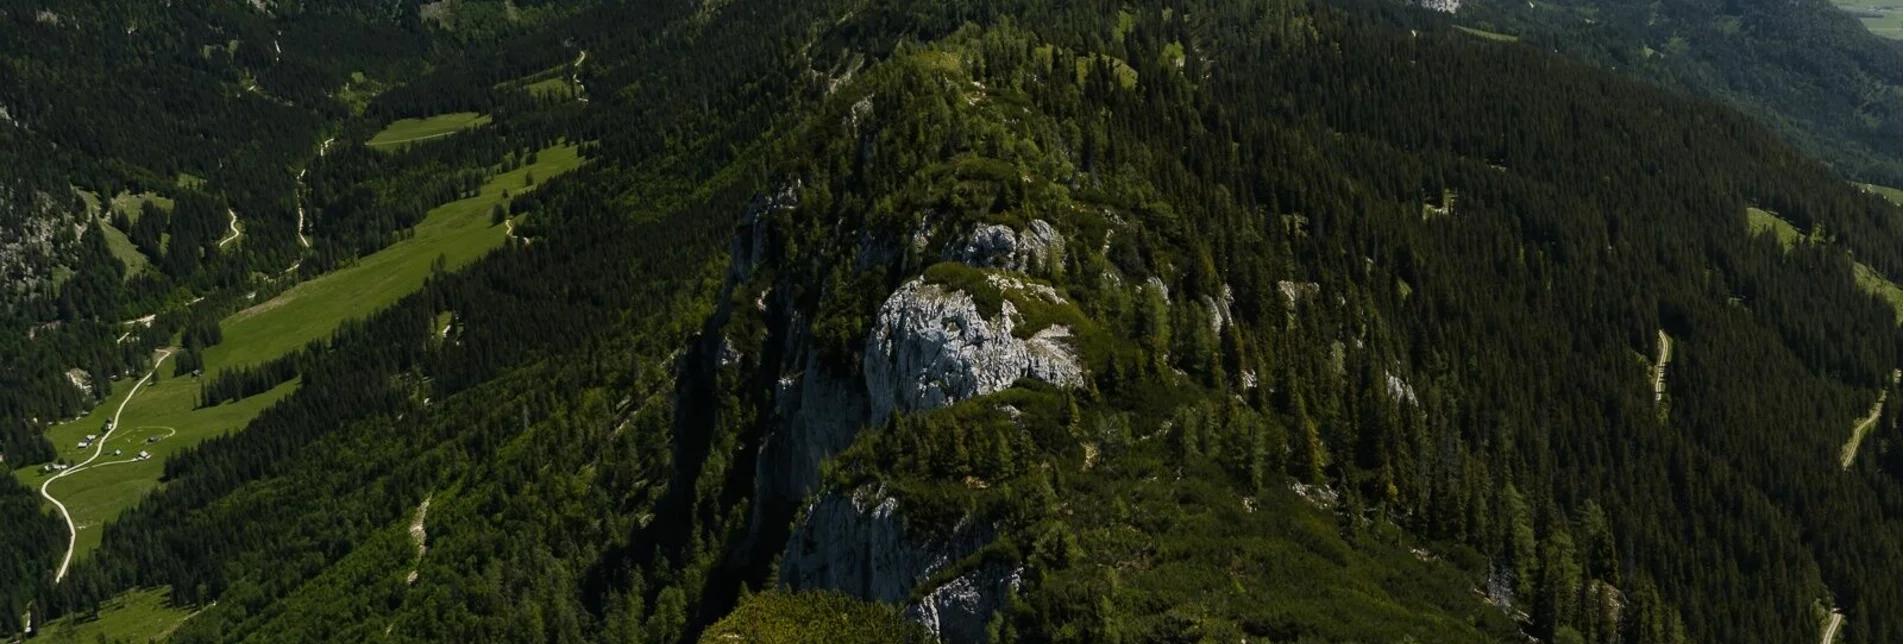 Bergtour Hechlsteinrunde - Touren-Impression #1 | © Erlebnisregion Schladming-Dachstein